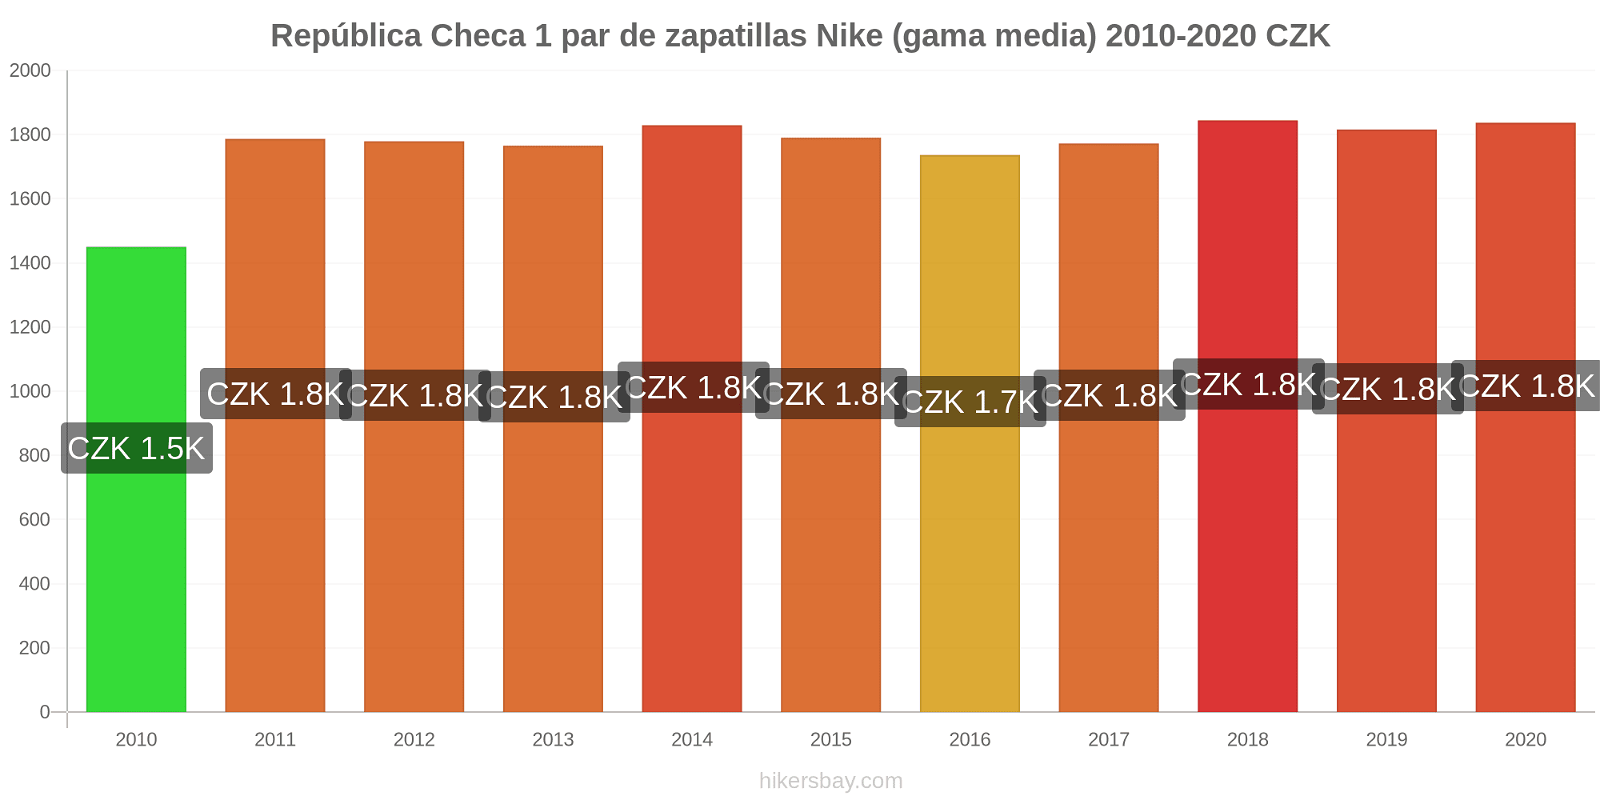 República Checa cambios de precios 1 par de zapatillas Nike (gama media) hikersbay.com